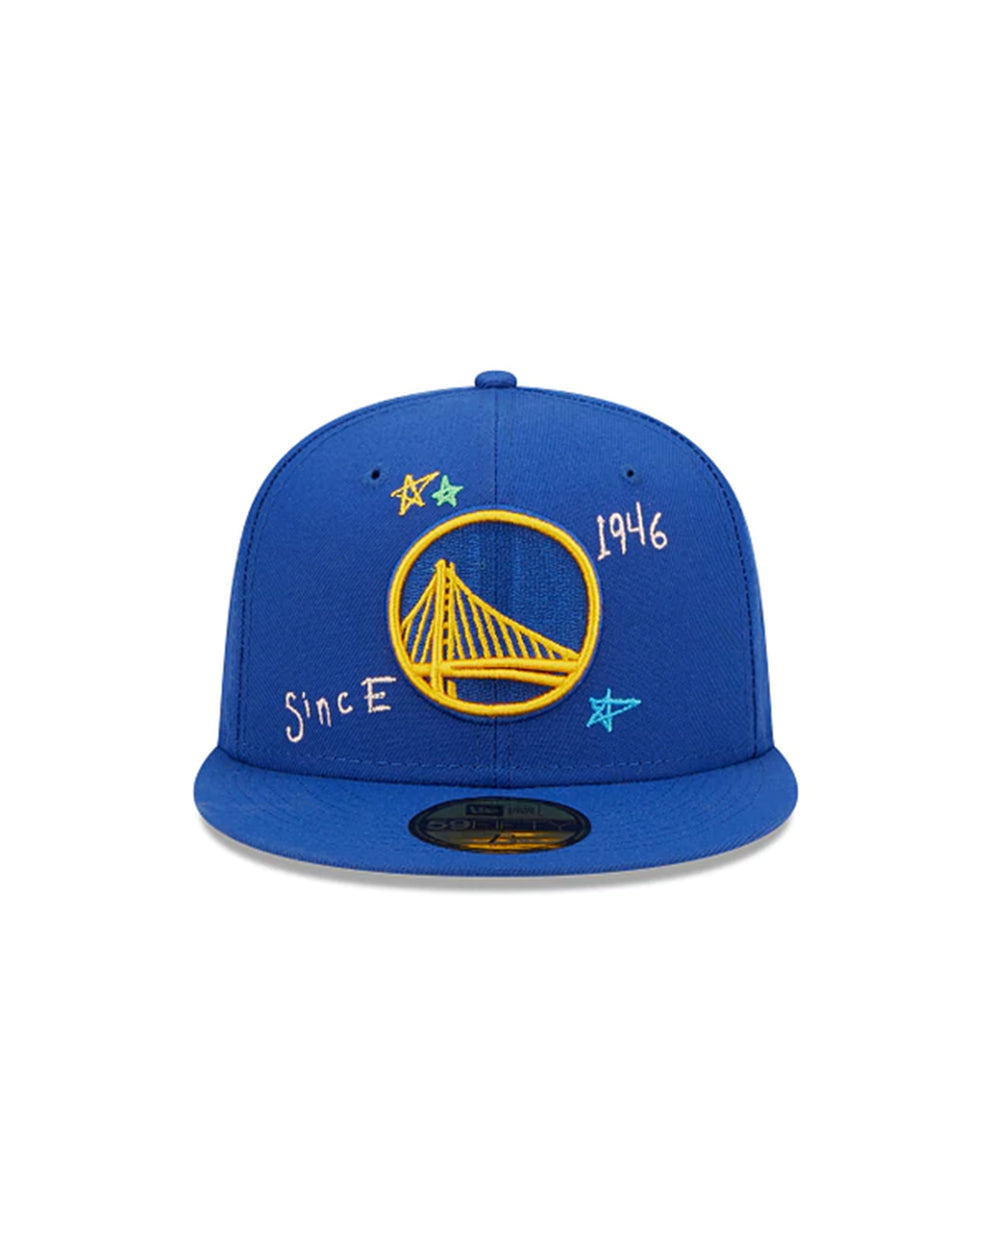 New Era, Accessories, Golden State Warriors Hat